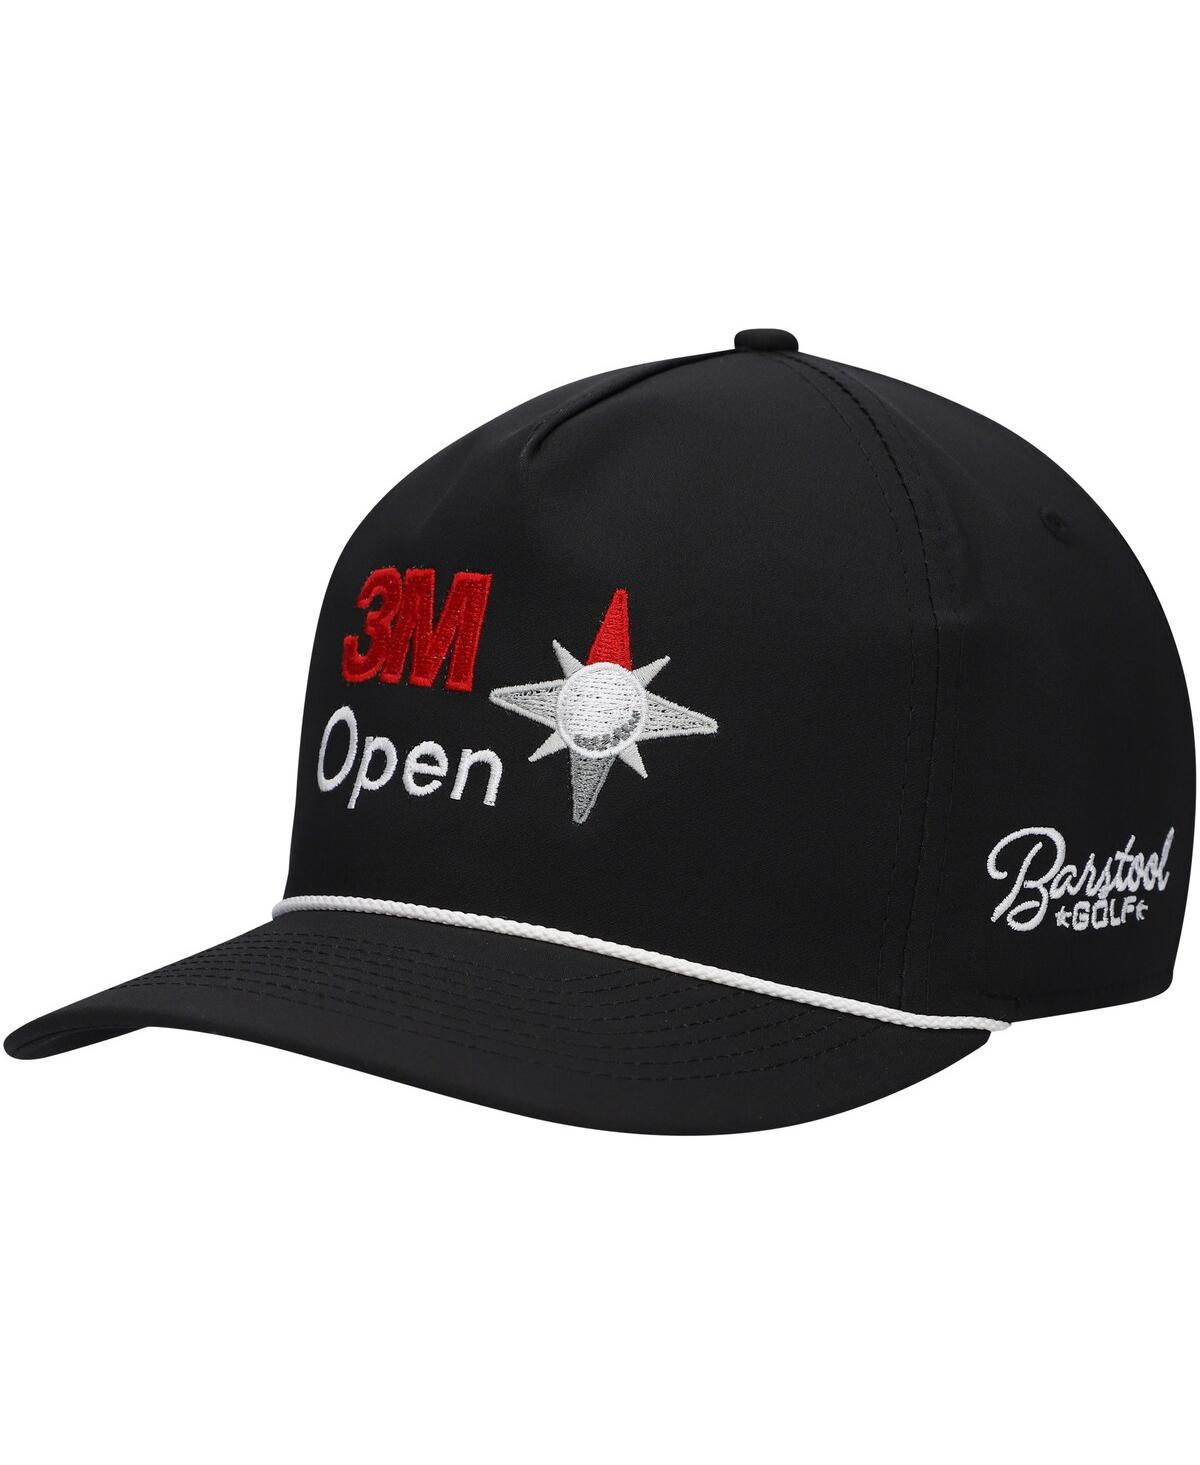 Barstool Golf Men's  Black 3m Open Rope Snapback Hat